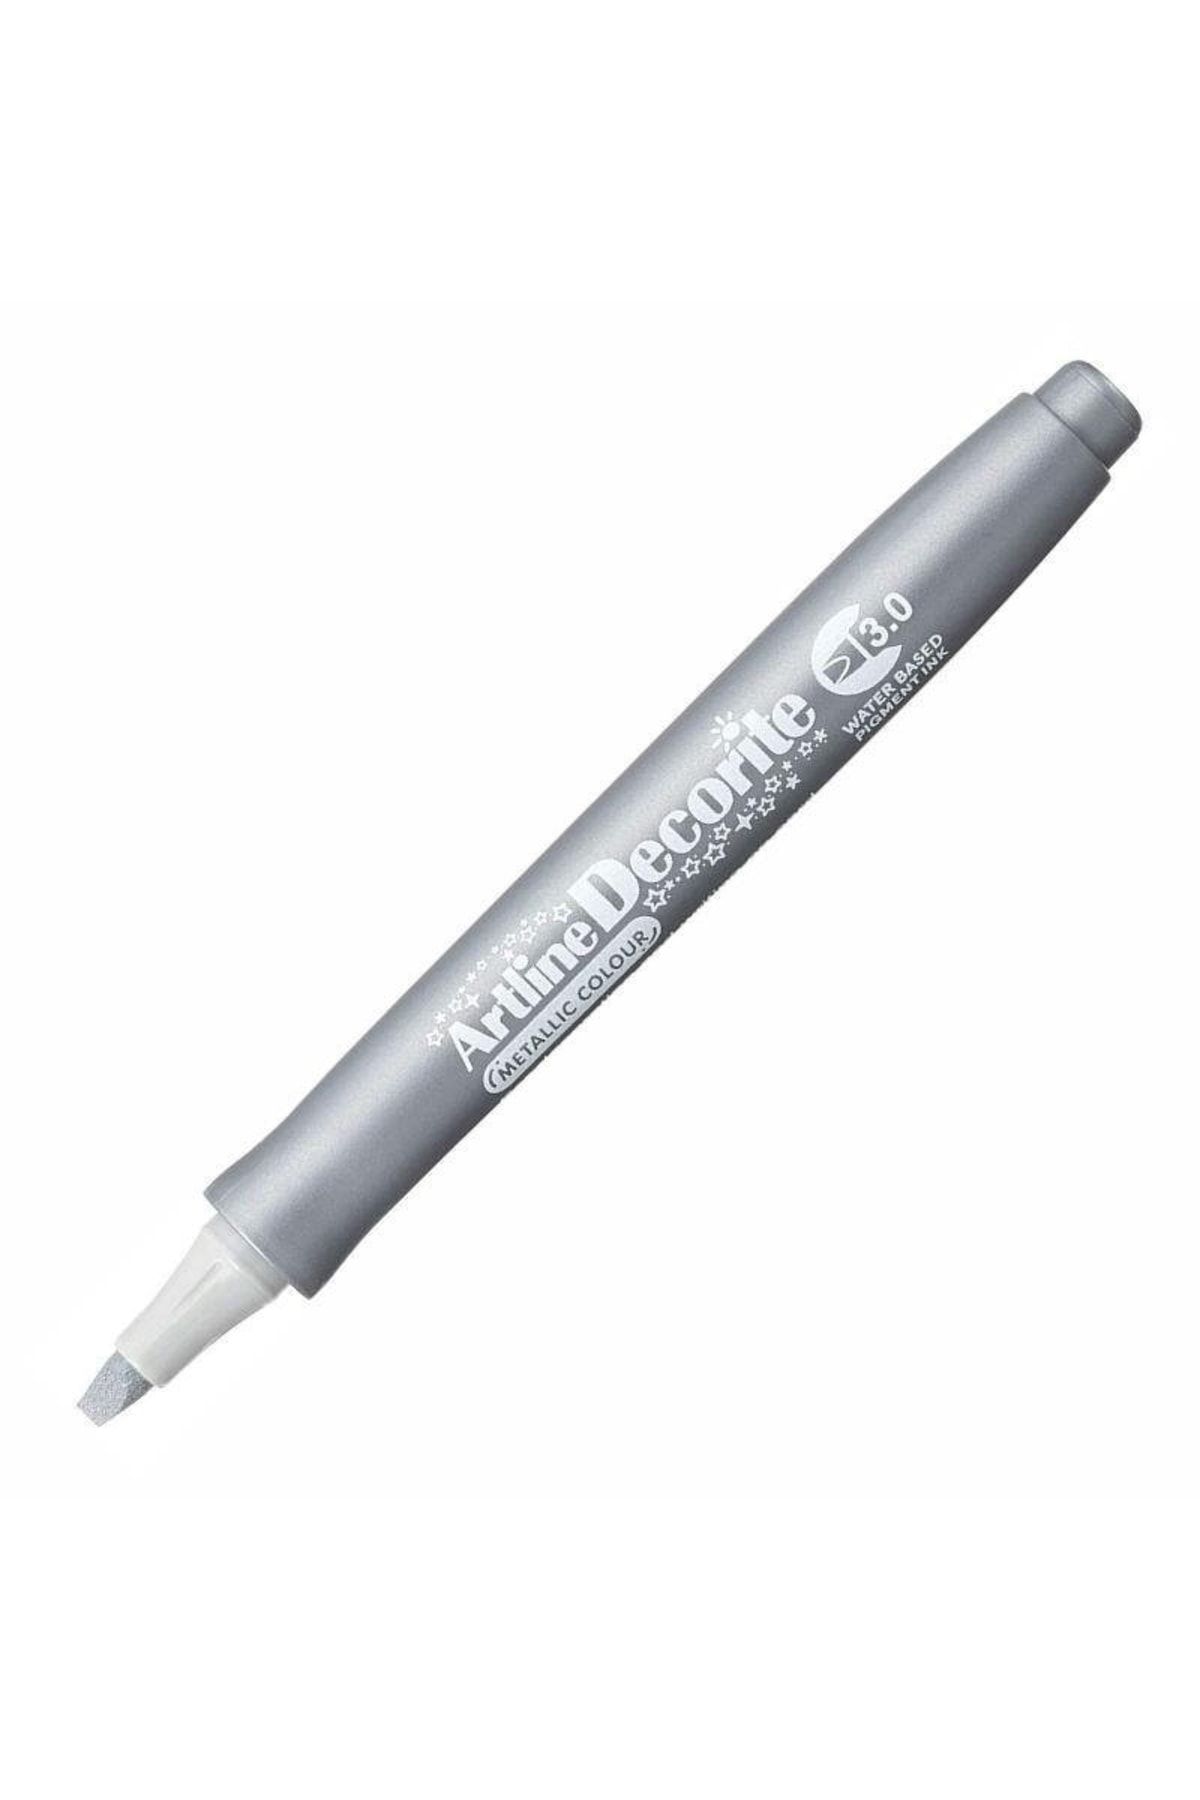 Genel Markalar Artline Decorite Marker Kalem Düz Kesik Uç 3.0 Silver